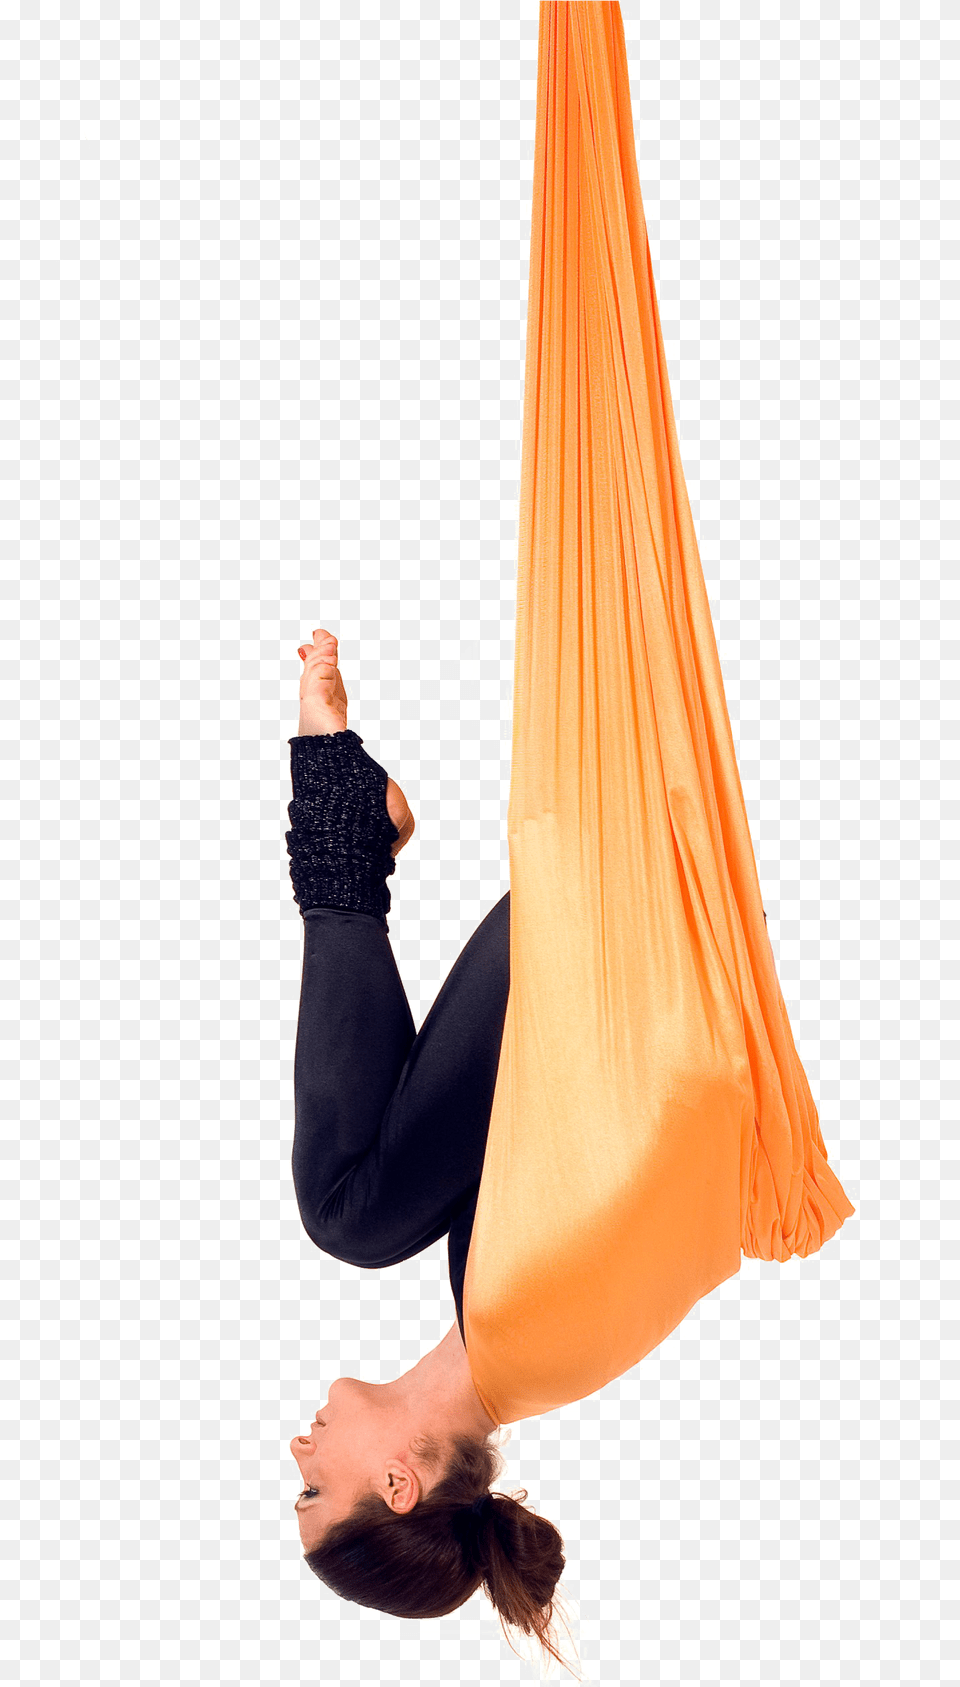 Aerial Yoga Pose Transparent File Aerial Yoga Bat Pose, Acrobatic, Adult, Female, Person Free Png Download